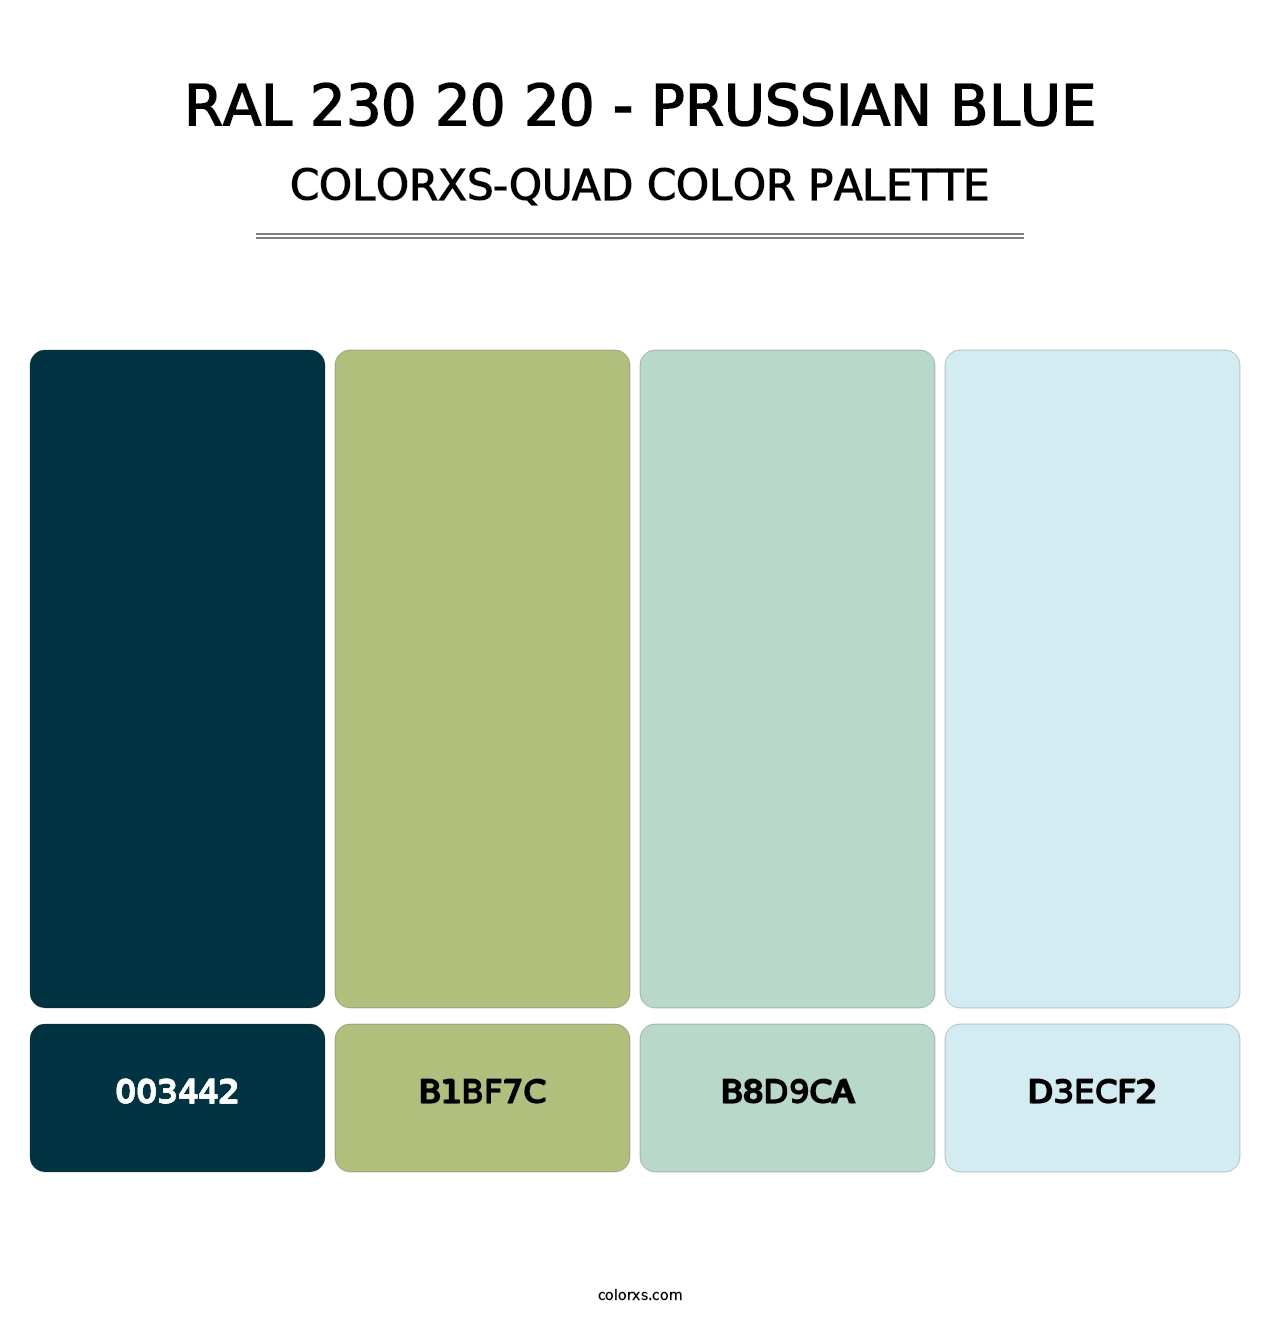 RAL 230 20 20 - Prussian Blue - Colorxs Quad Palette